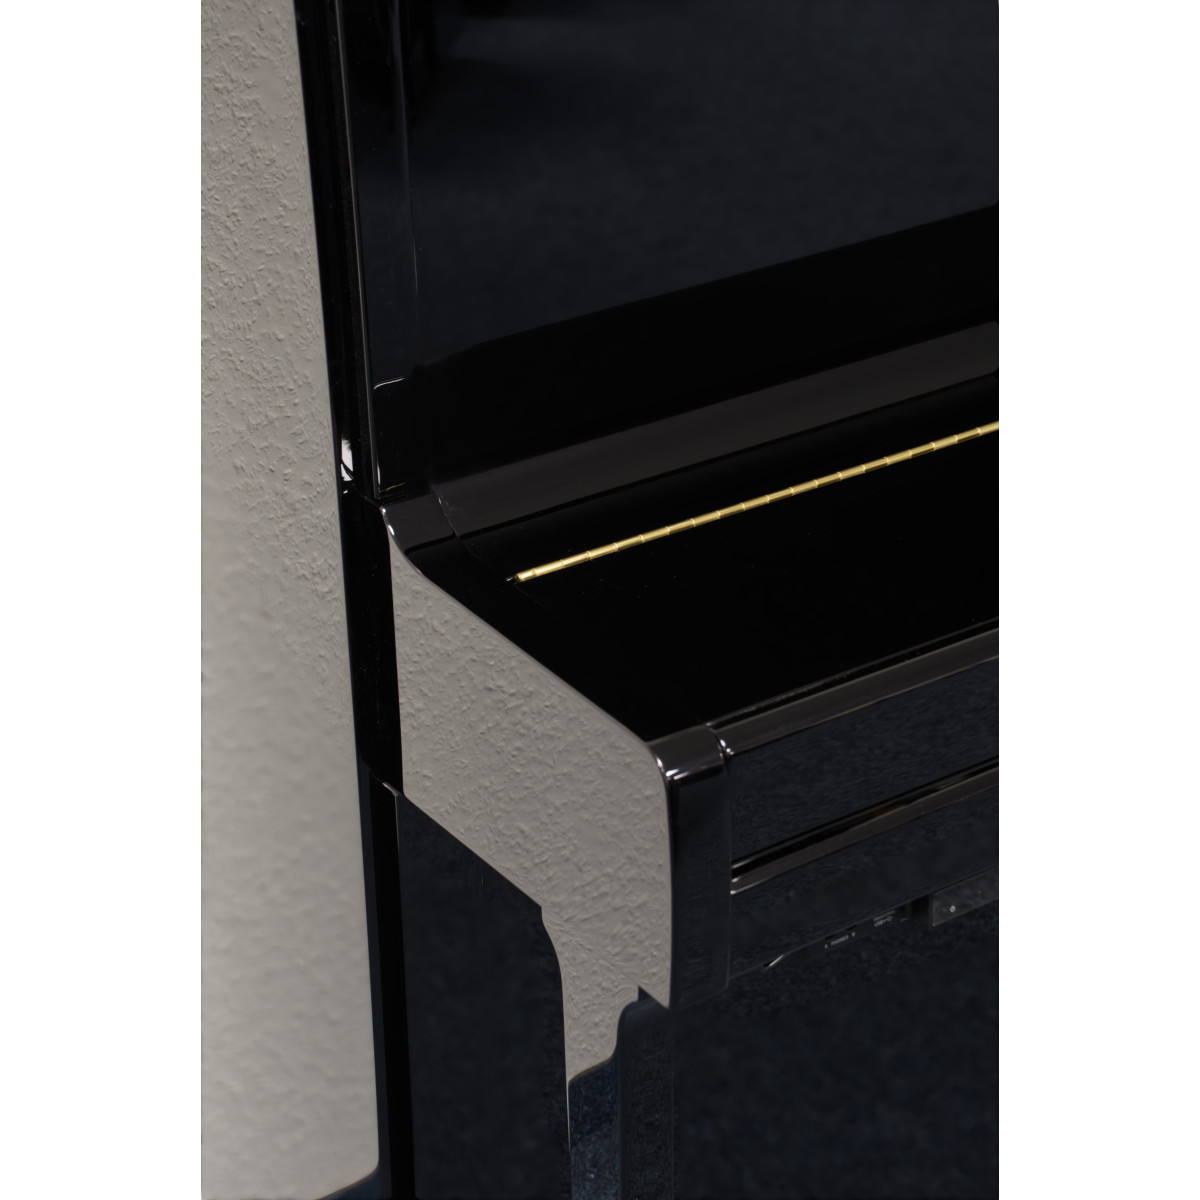 Yamaha P116 SH2 Silent Klavier Schwarz Hochglanz poliert - gebraucht - Ansicht: geschlossen nah